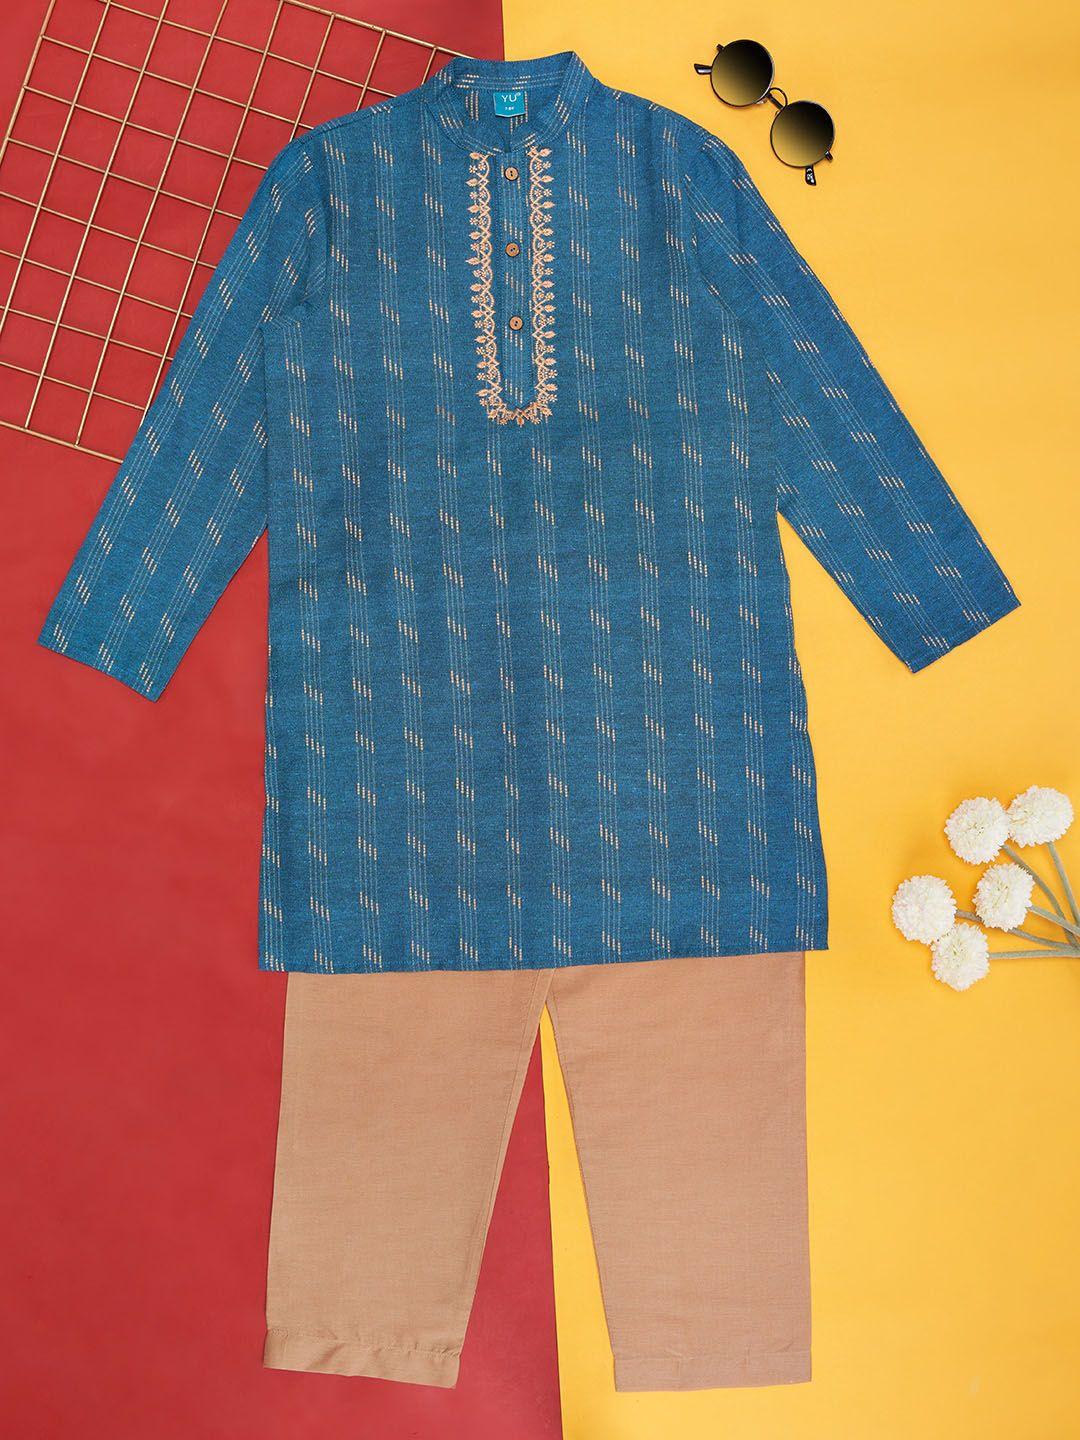 yu by pantaloons boys ethnic motifs printed pure cotton straight kurta with pyjamas